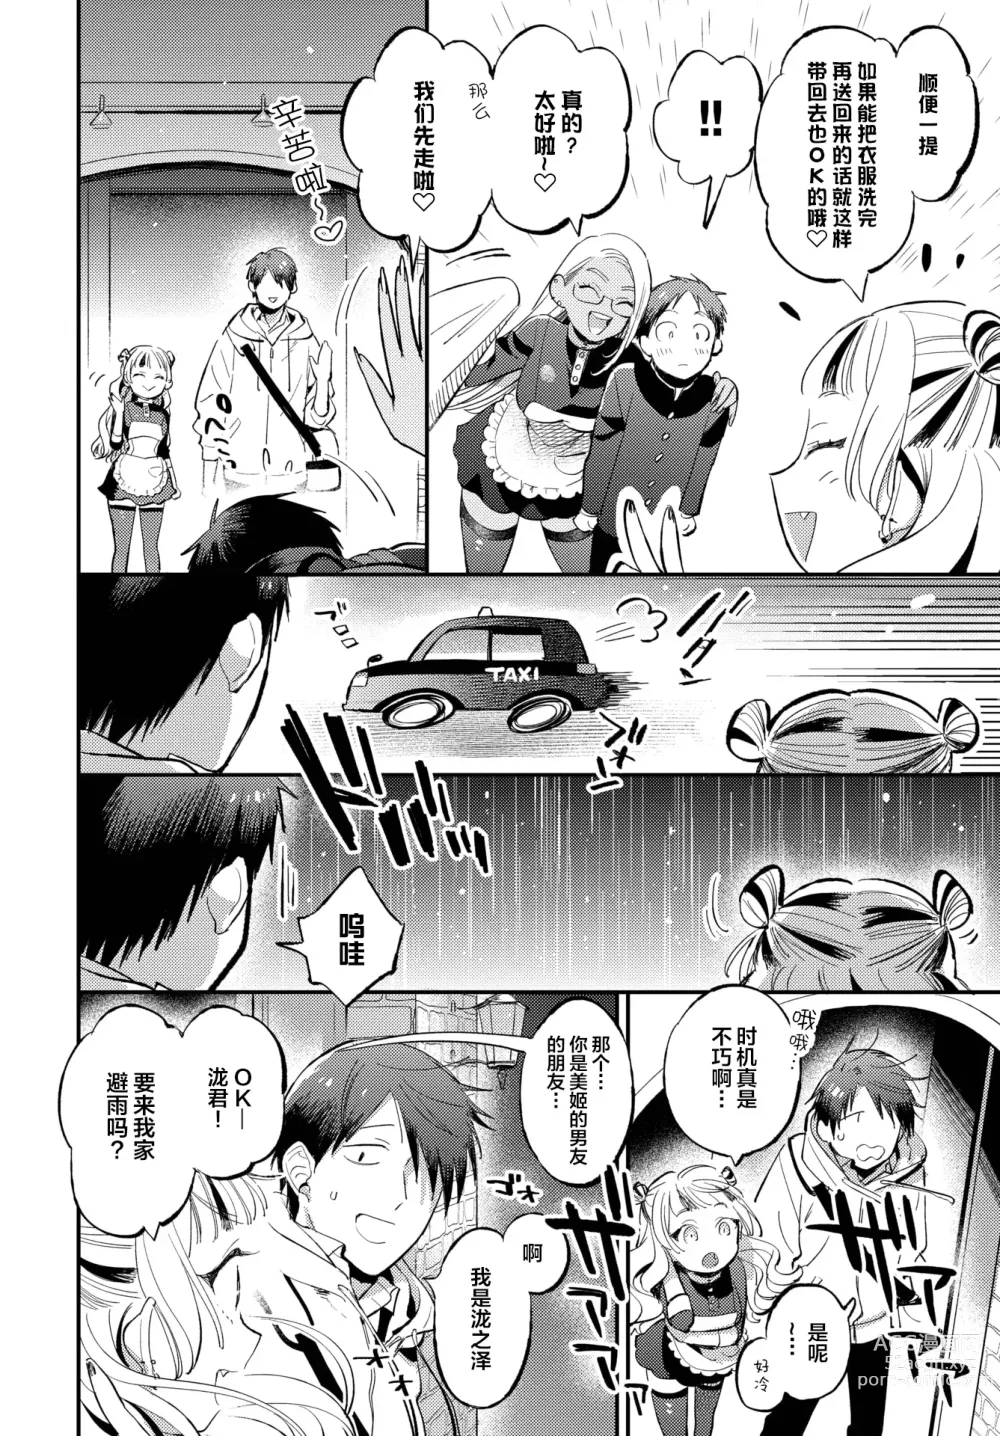 Page 2 of manga Senpai no Toriko